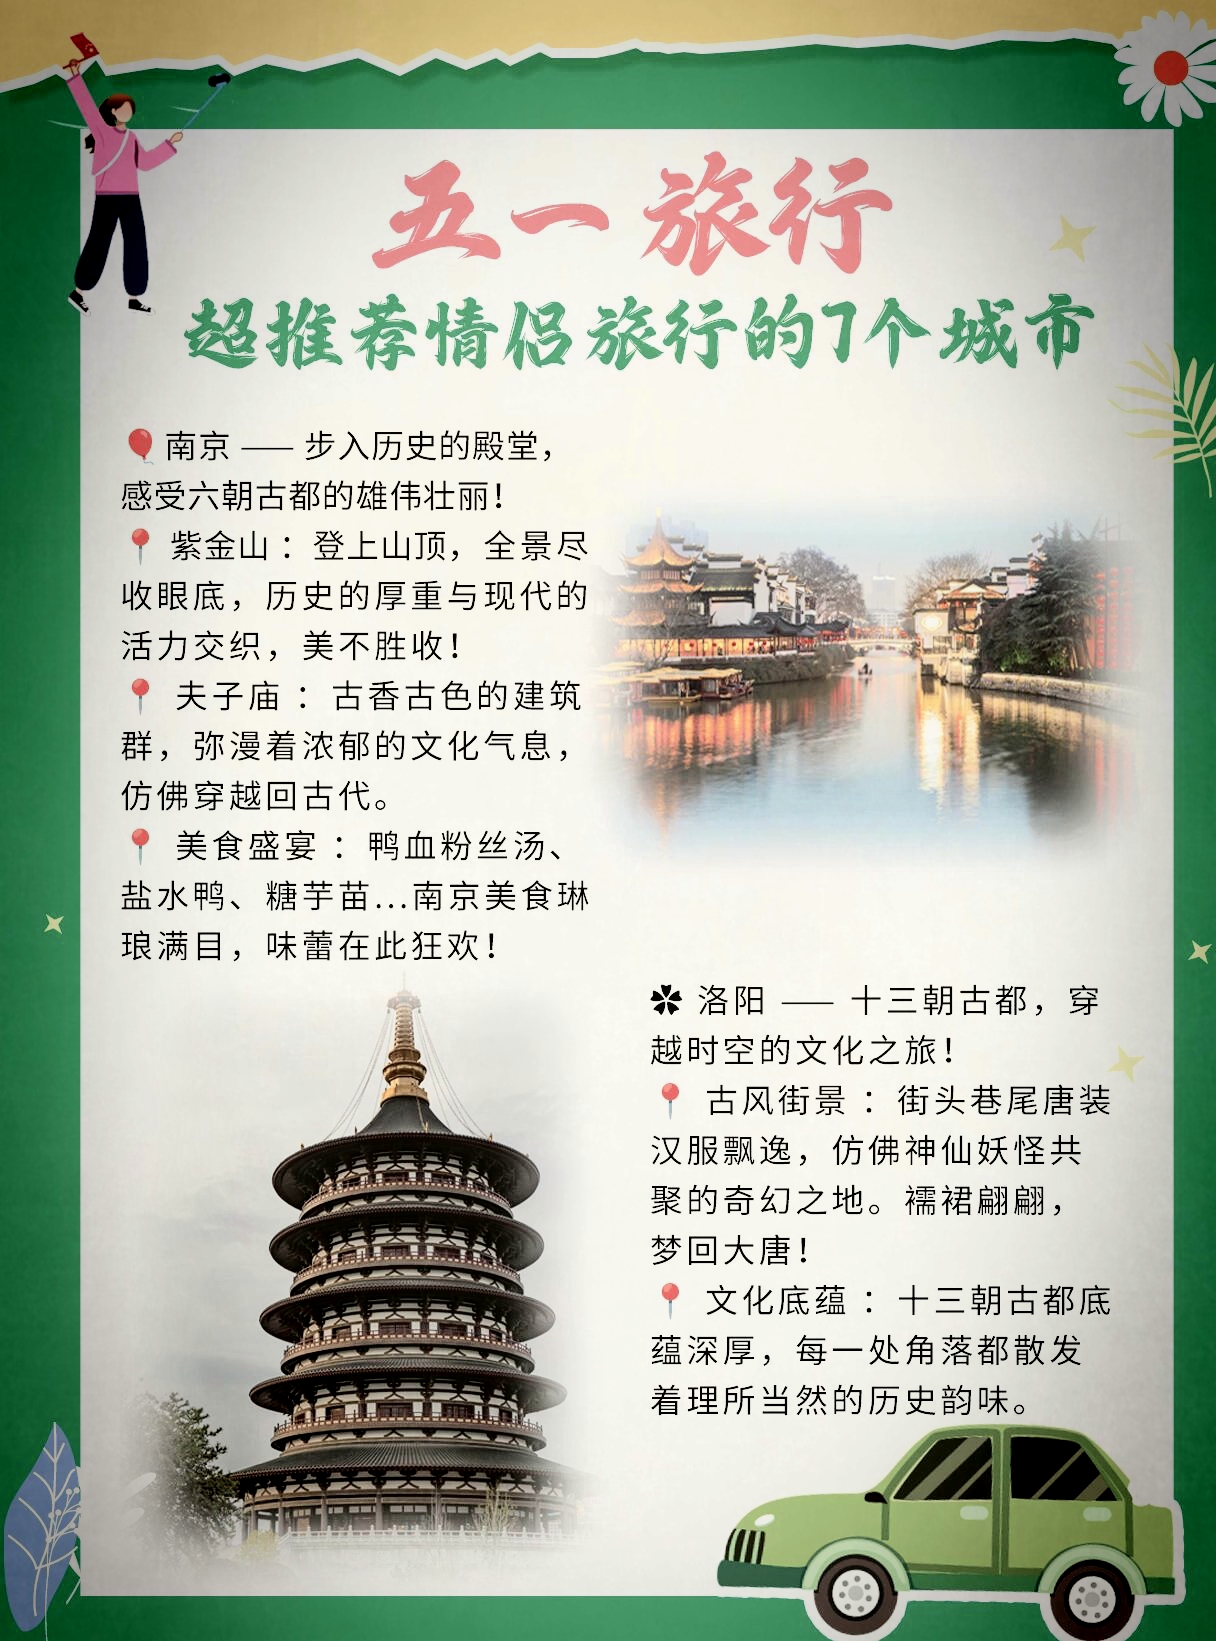 五一旅行|超推荐情侣旅行的7个城市 南京——步入历史的殿堂，感受六朝古都的雄伟壮丽！ 紫金山：登上山